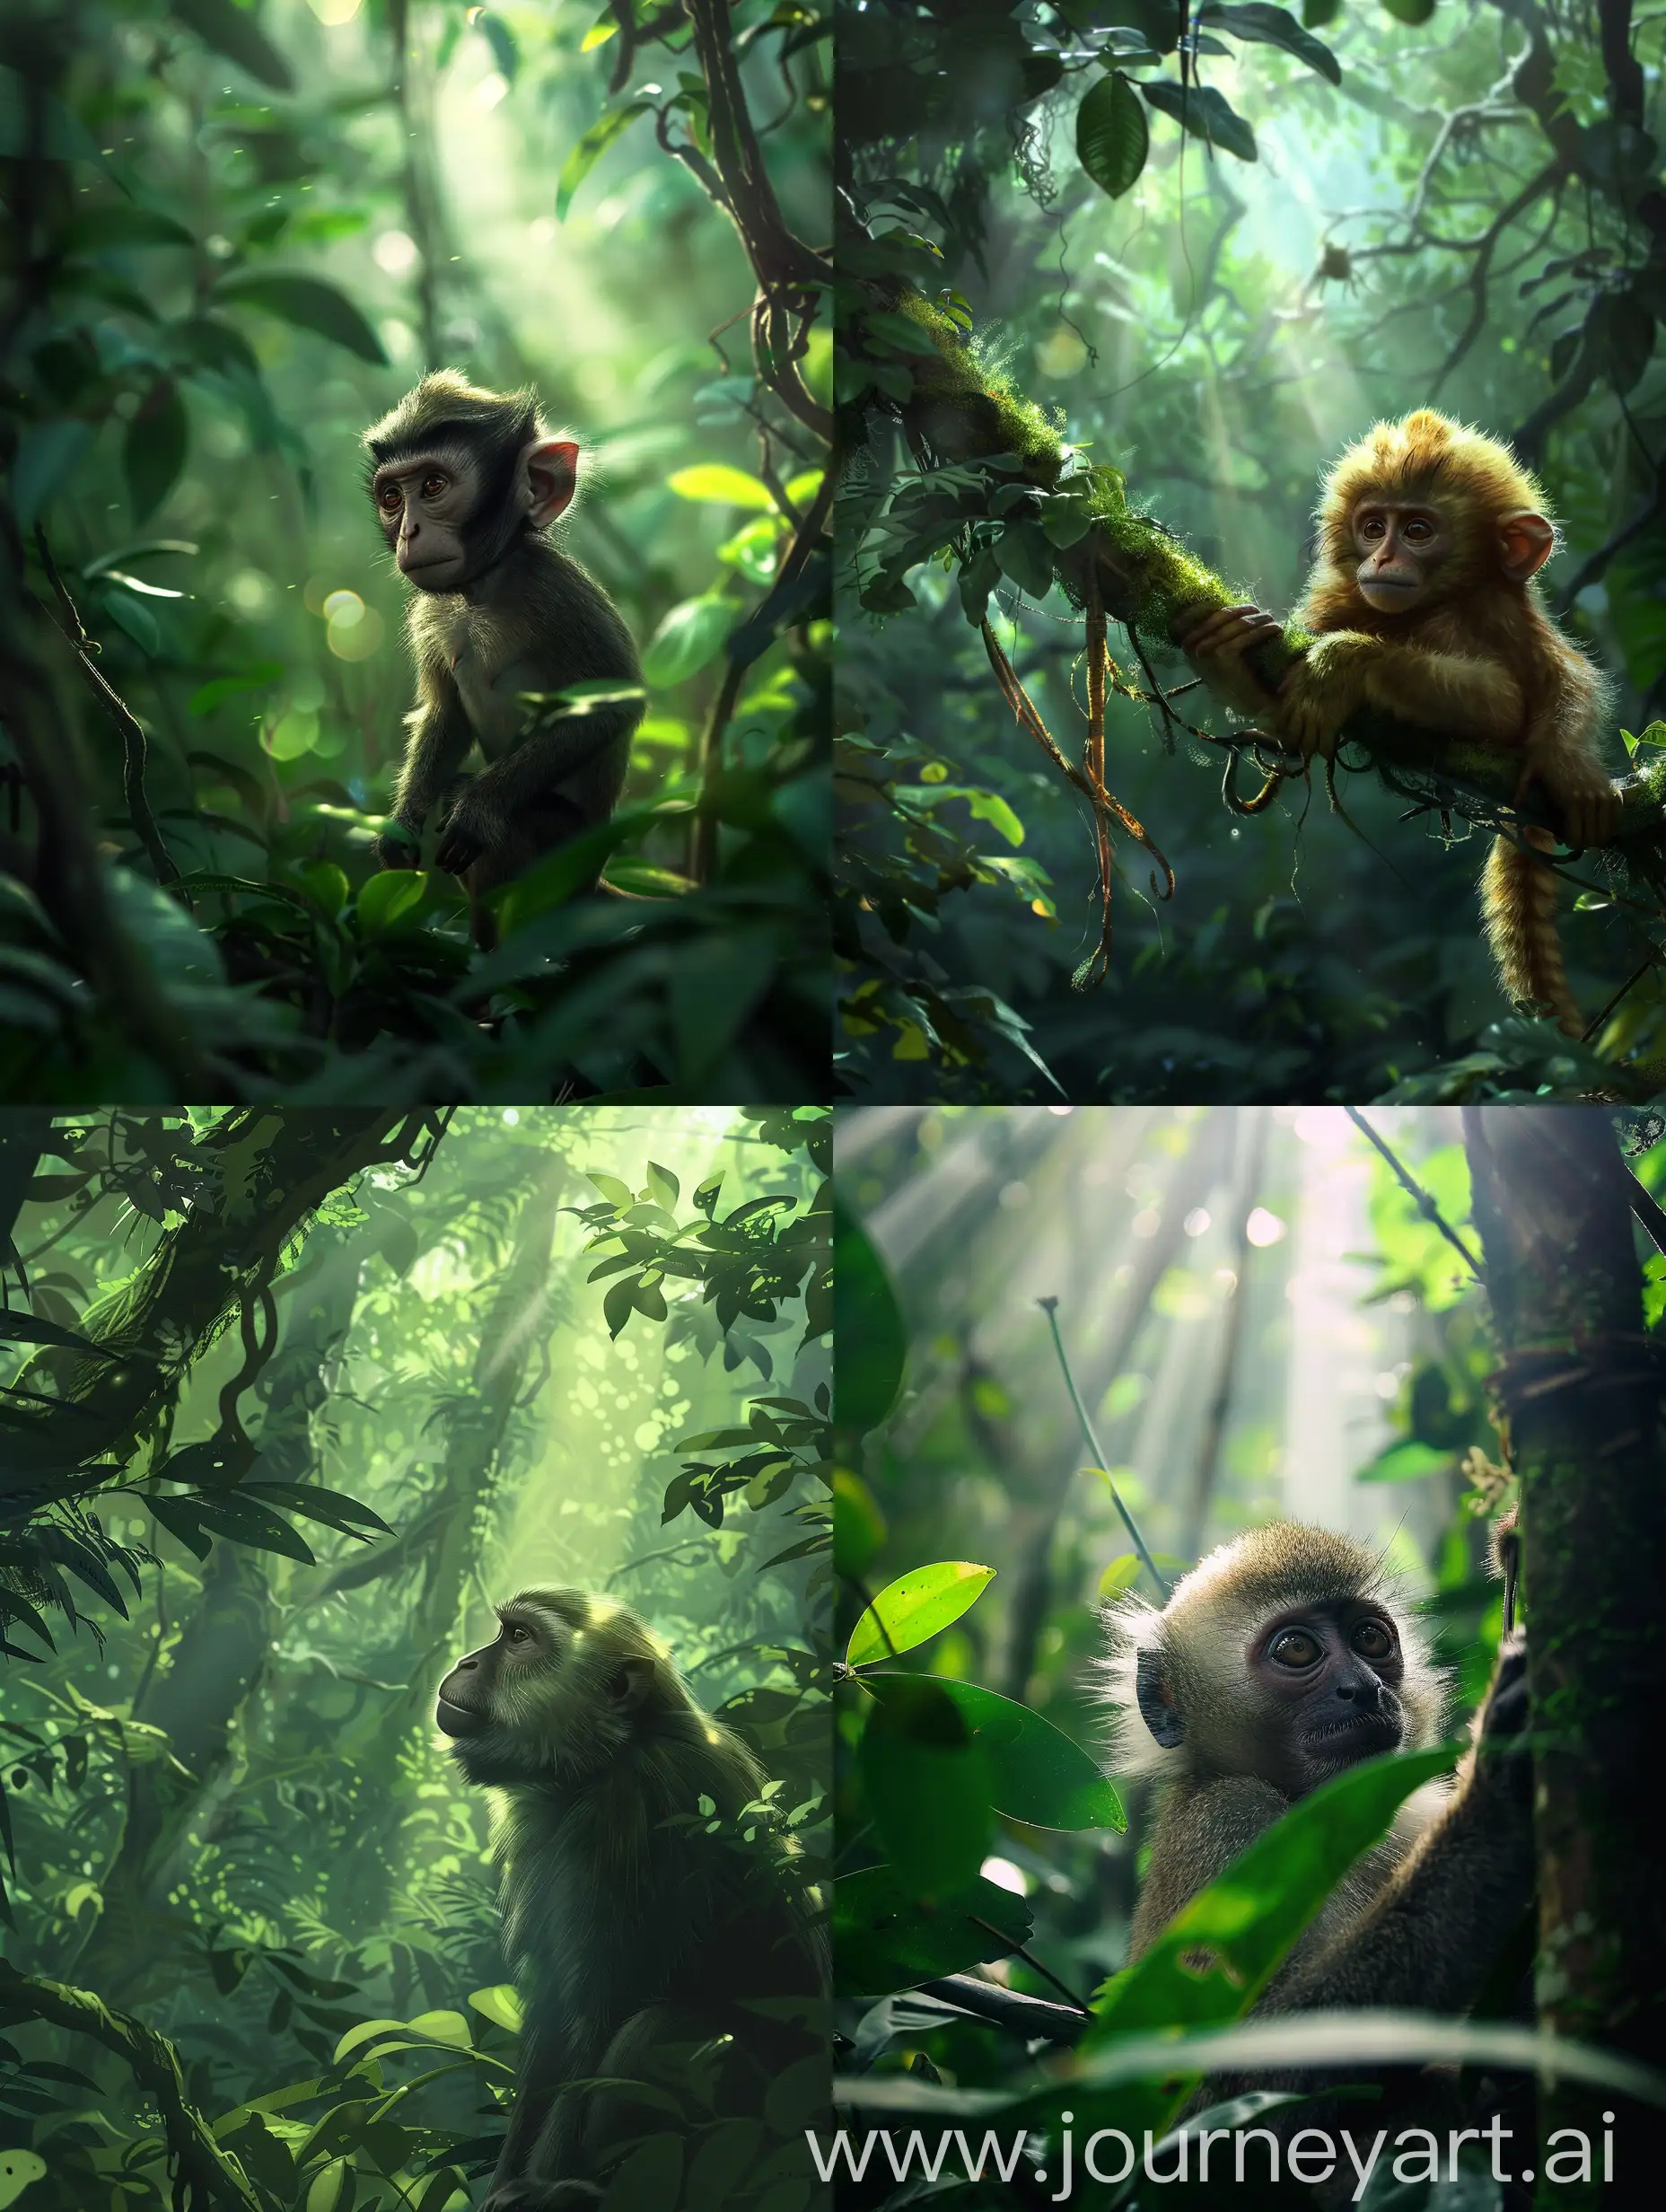 Глубоко в дремучем лесу, где лучи солнца едва проникали сквозь плотный зеленый свод, жила странная обезьяна по имени Марло.